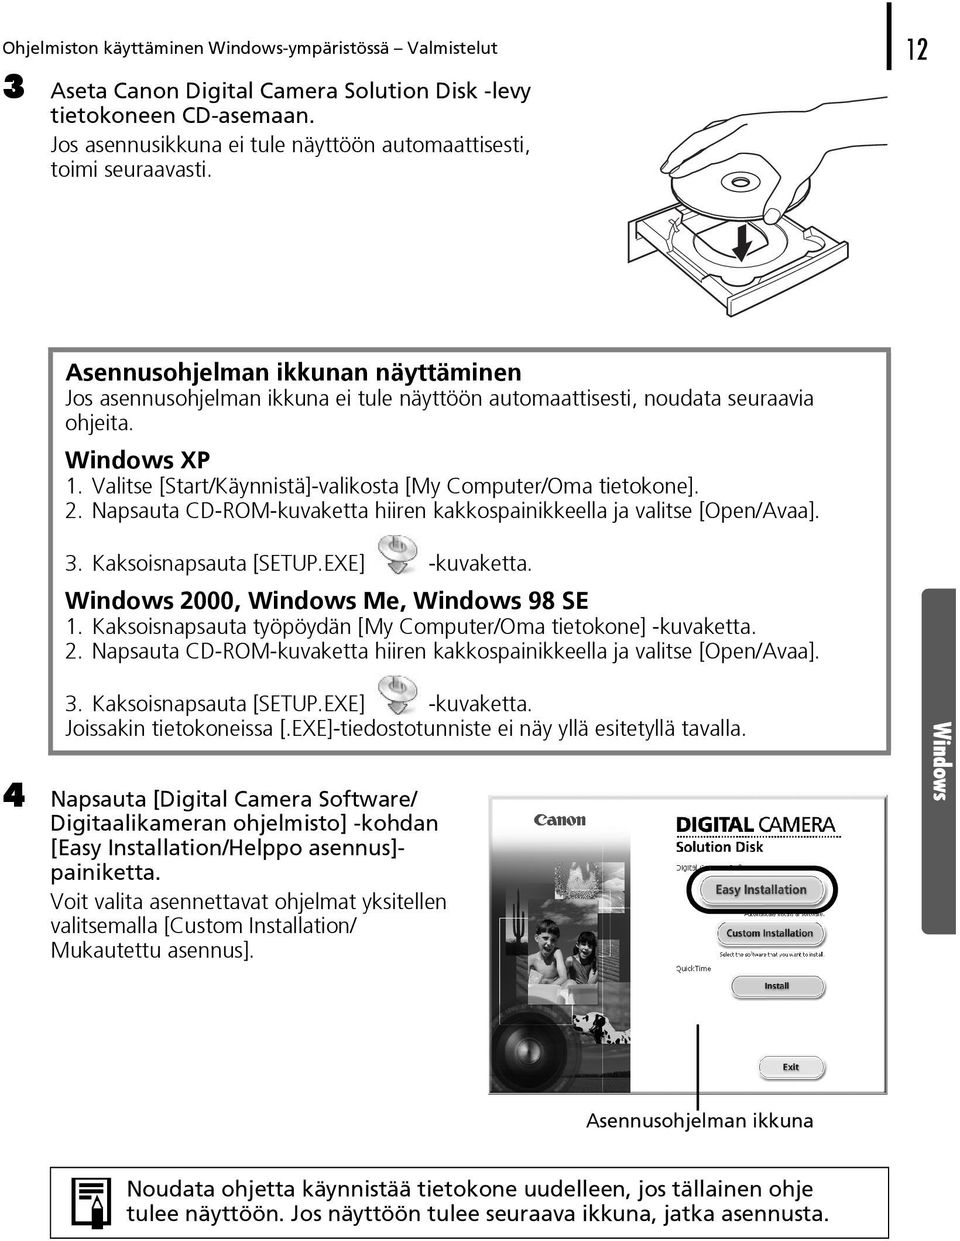 Windows XP 1. Valitse [Start/Käynnistä]-valikosta [My Computer/Oma tietokone]. 2. Napsauta CD-ROM-kuvaketta hiiren kakkospainikkeella ja valitse [Open/Avaa]. 3. Kaksoisnapsauta [SETUP.EXE] -kuvaketta.